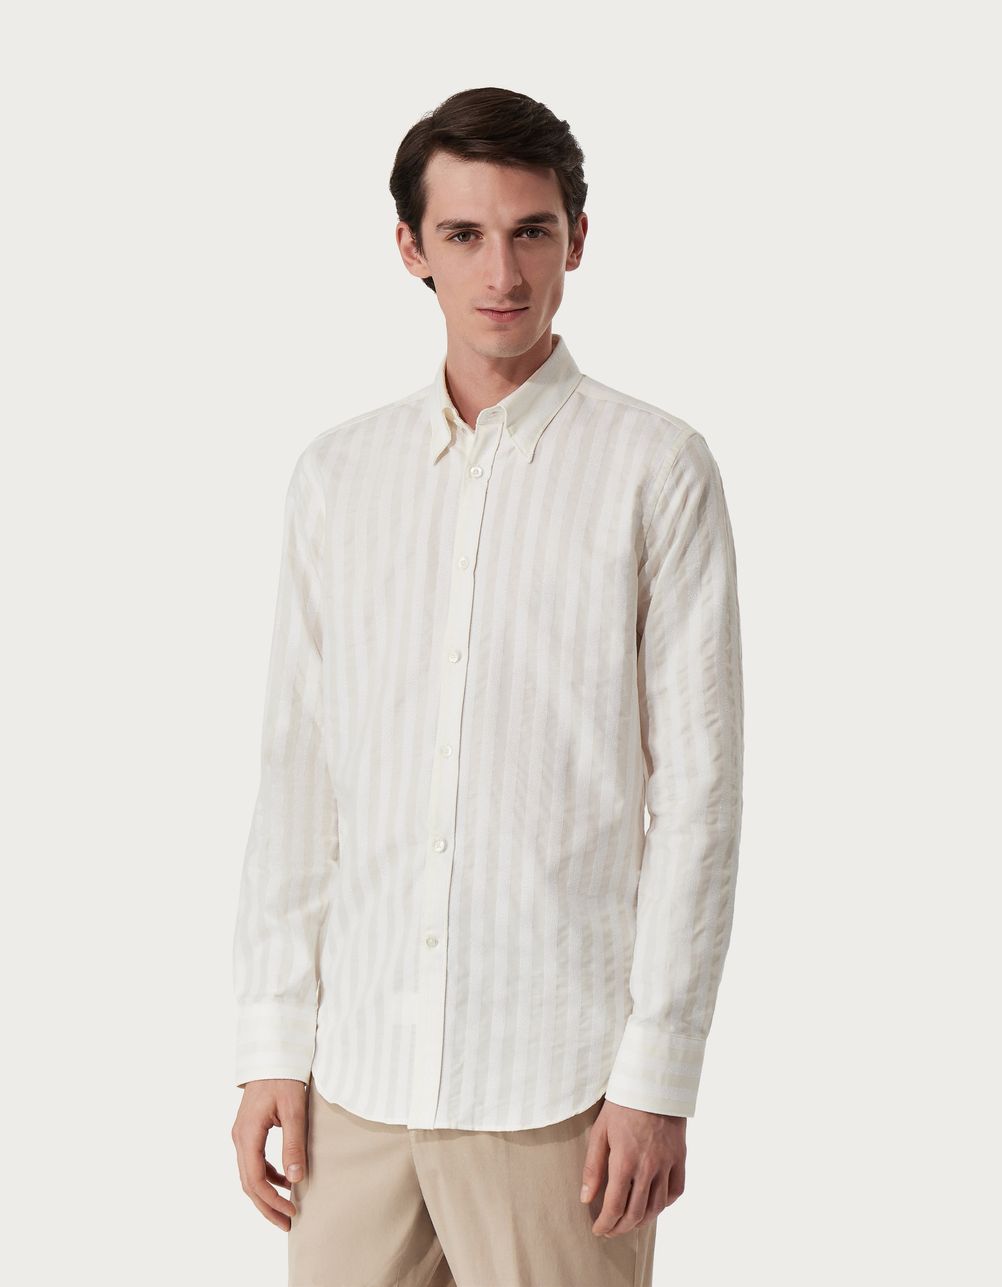 Camisa slim fit de algodón a rayas beige y blanca 